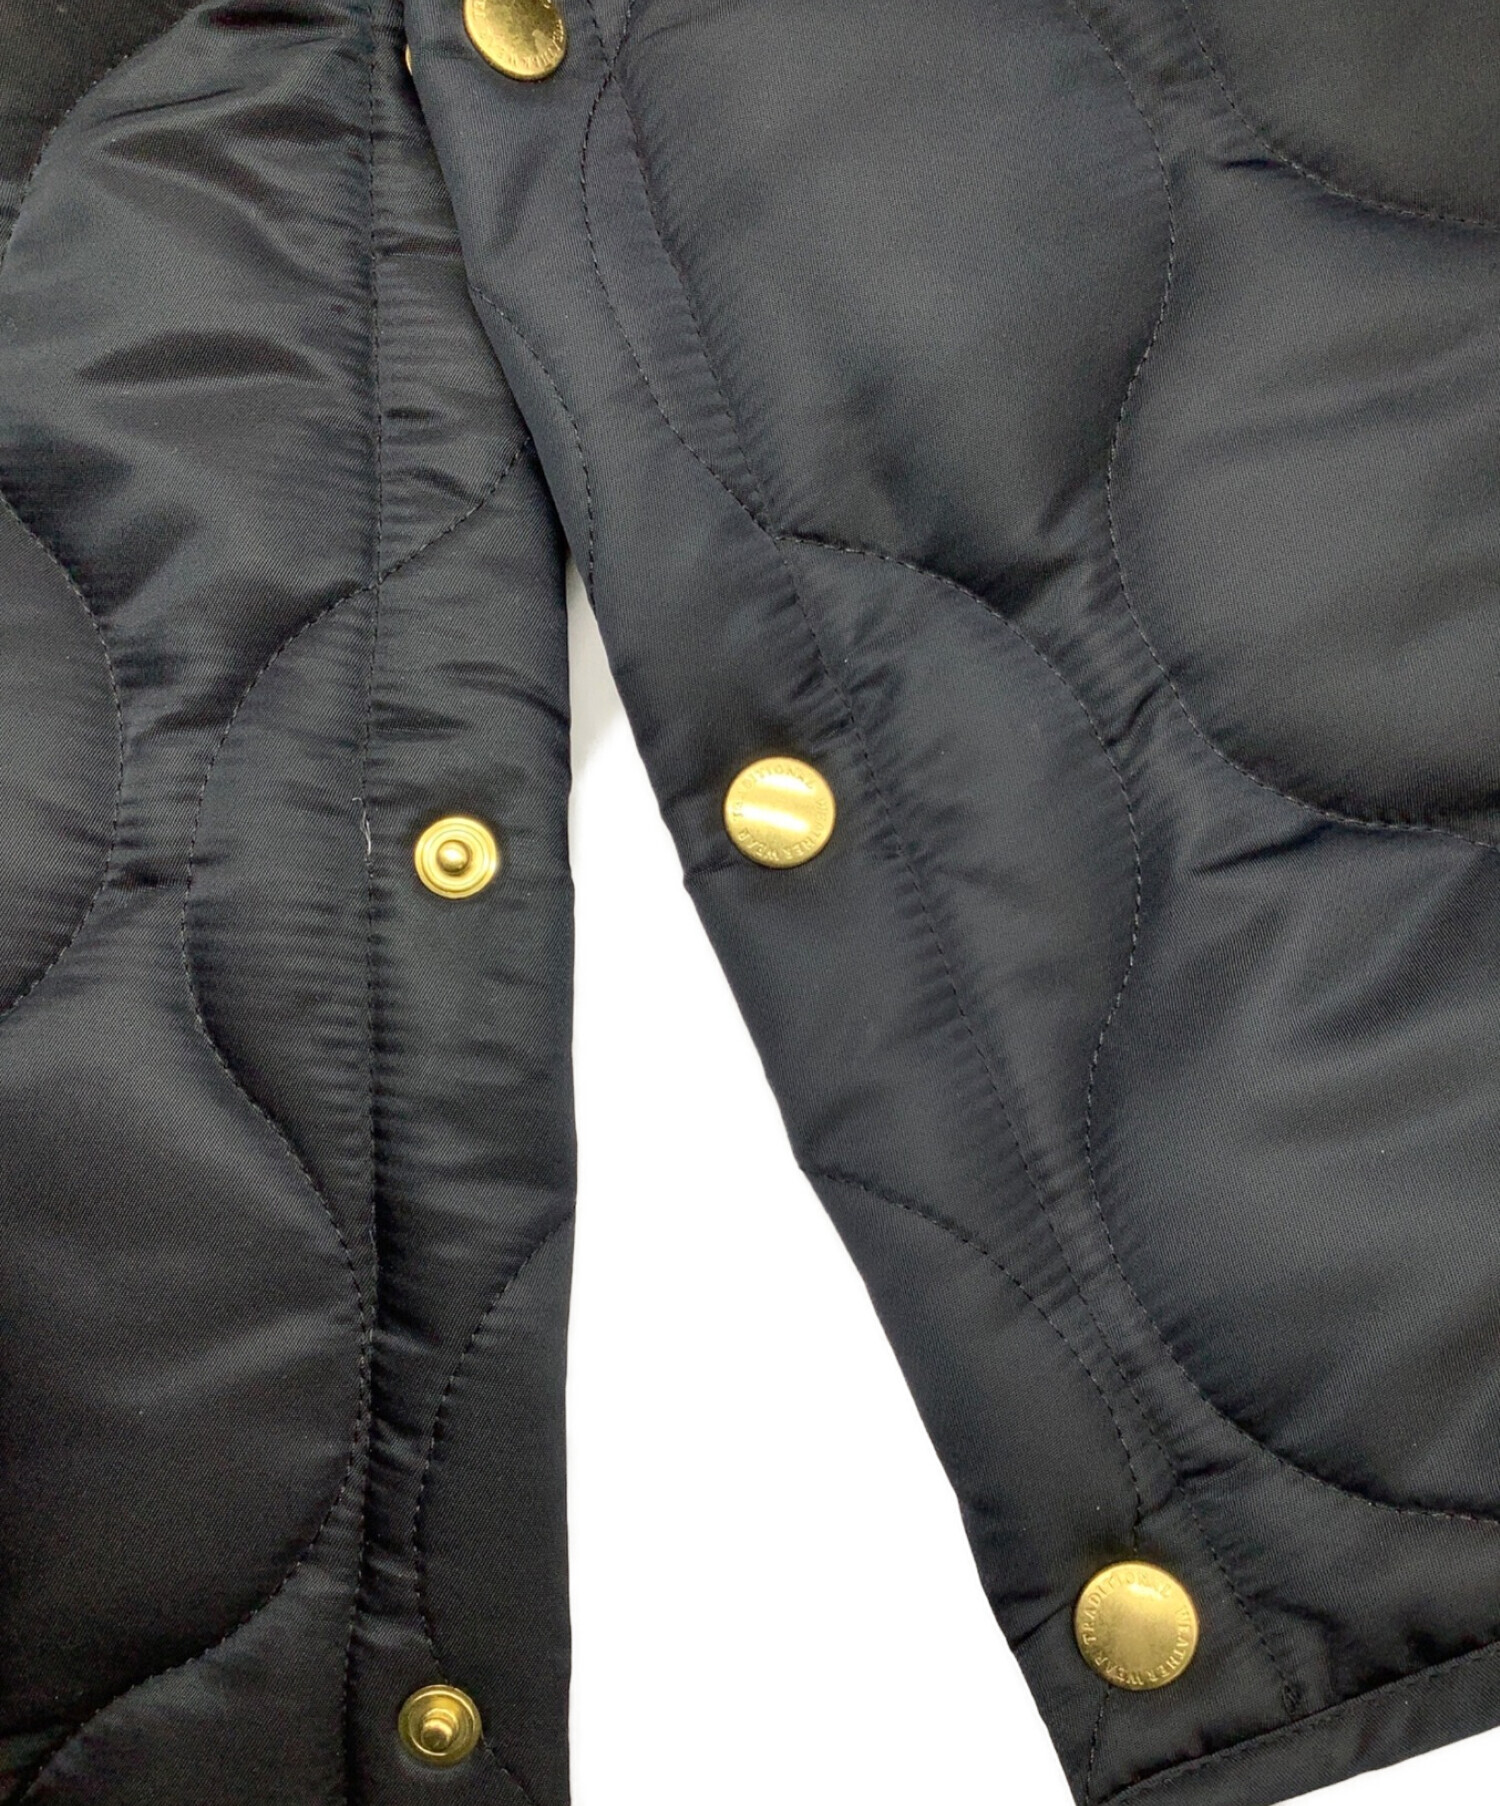 Traditional Weatherwear (トラディショナルウェザーウェア) キルティングコート ブラック サイズ:34